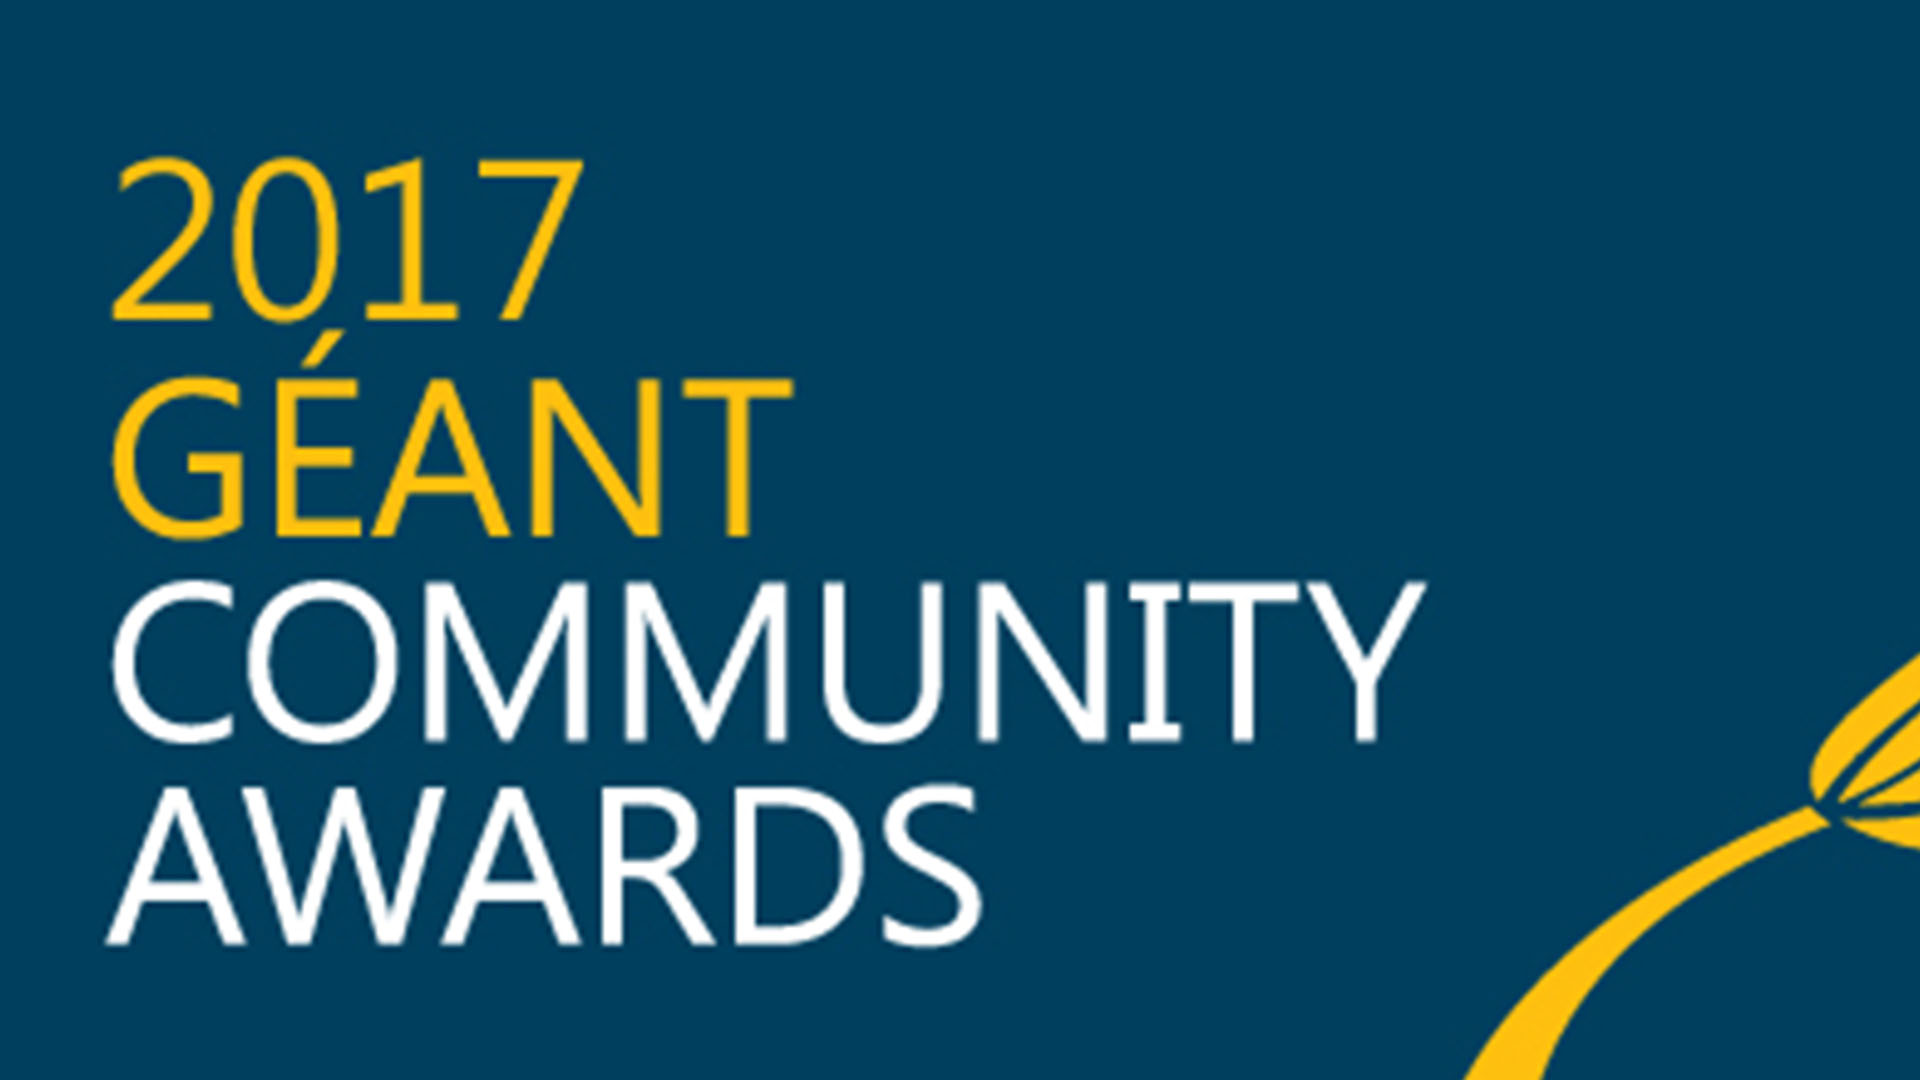 GÉANT Community Award 2017: zespołowa nagroda za współpracę w ramach PIONIERA